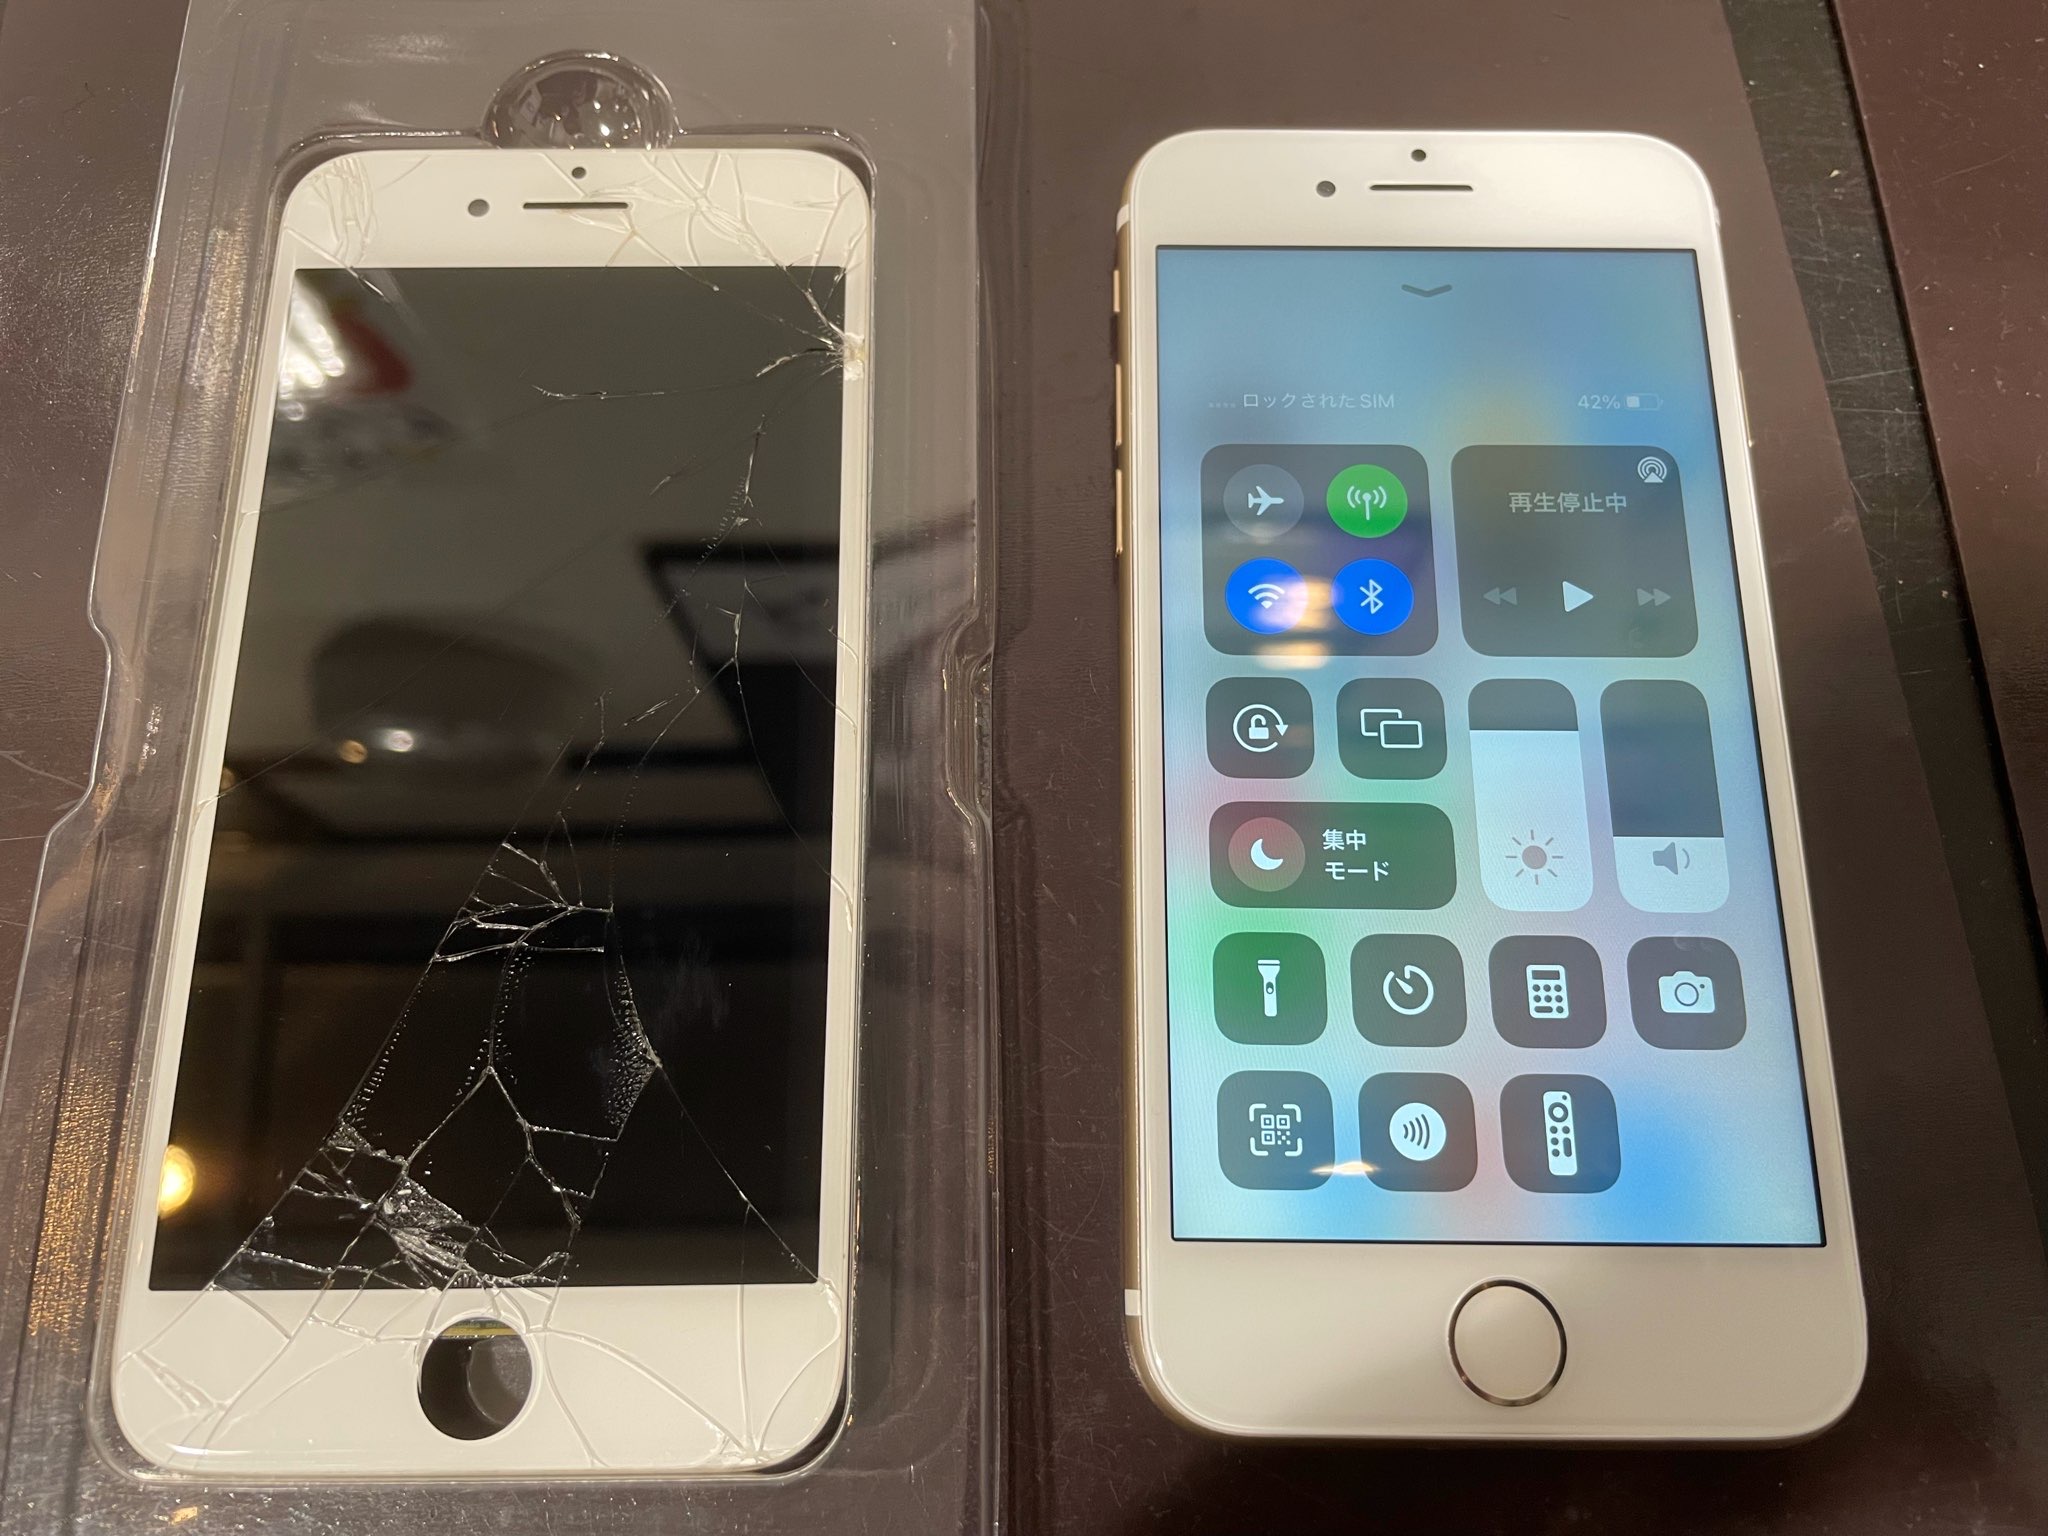 iPhone 7の画面修理は30分修理!?気になる破損はその日のうちに!